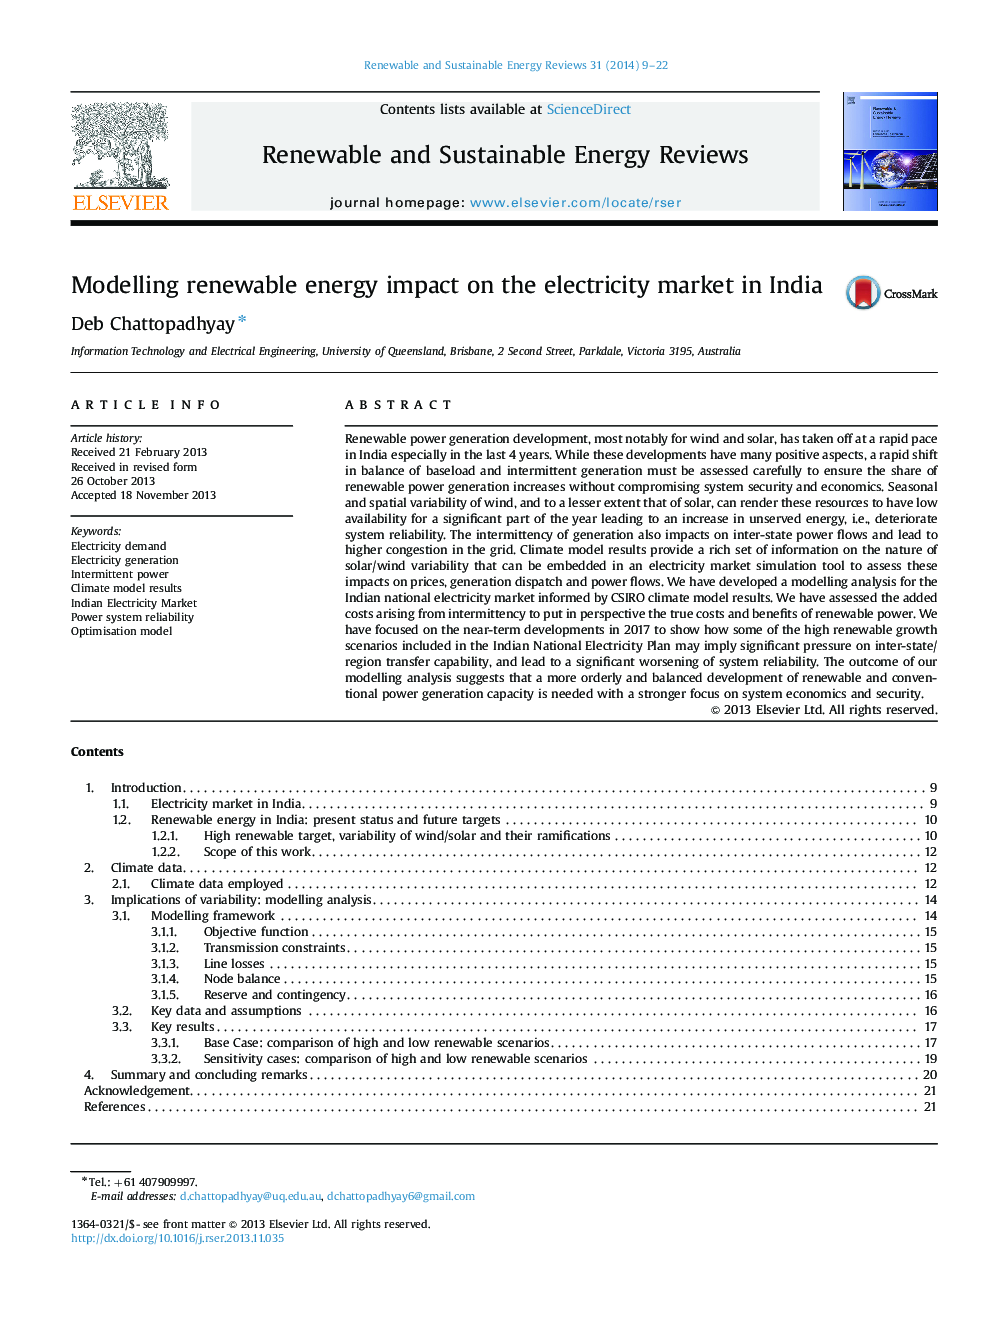 مدلسازی تأثیرات انرژی تجدیدپذیر در بازار برق هند 